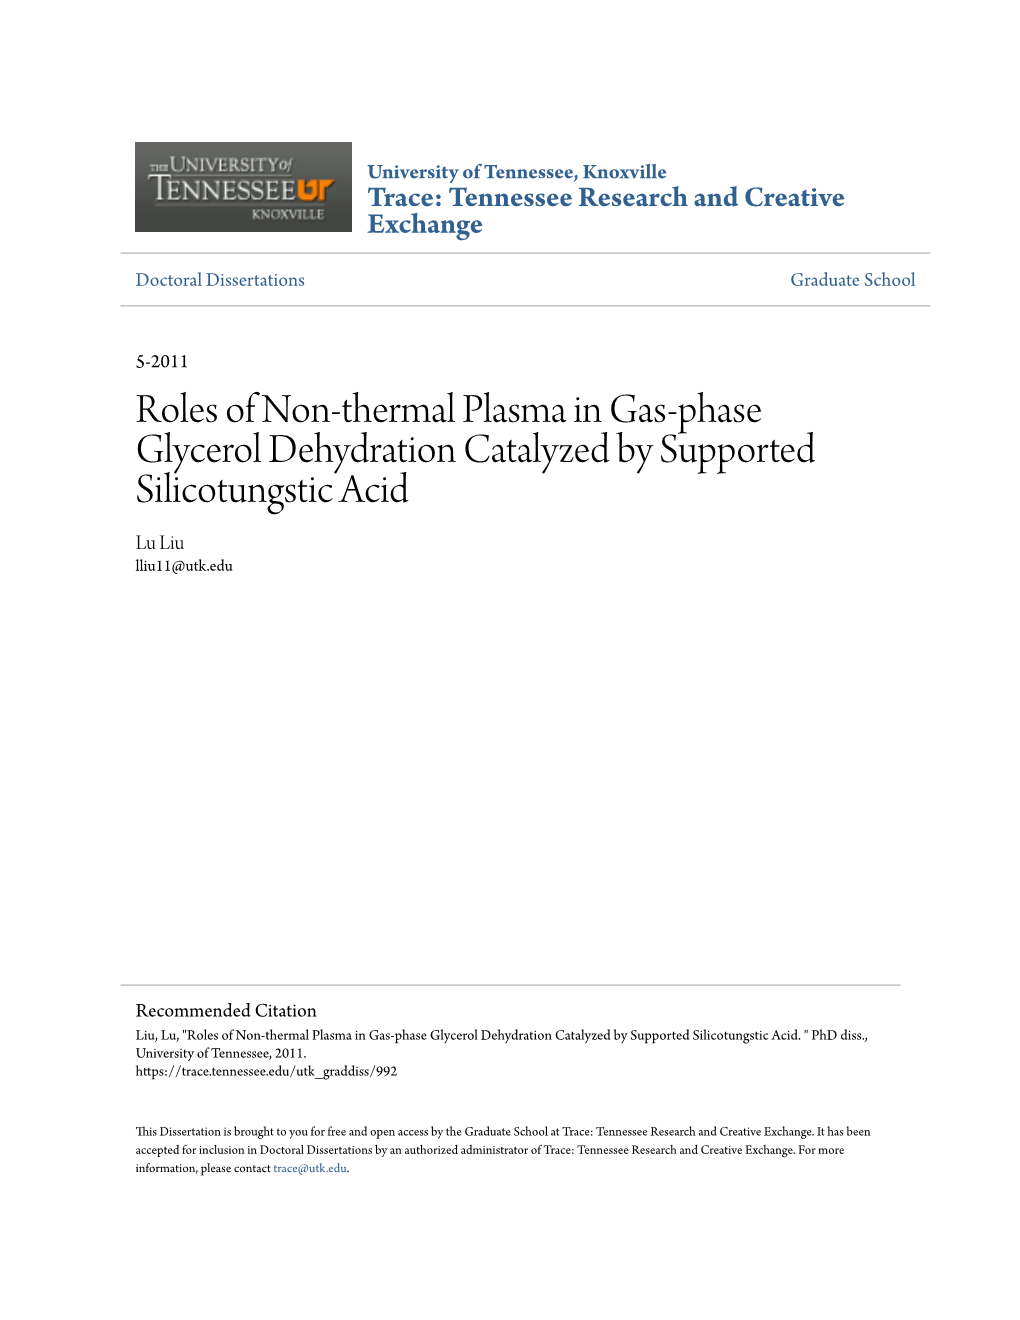 Roles of Non-Thermal Plasma in Gas-Phase Glycerol Dehydration Catalyzed by Supported Silicotungstic Acid Lu Liu Lliu11@Utk.Edu